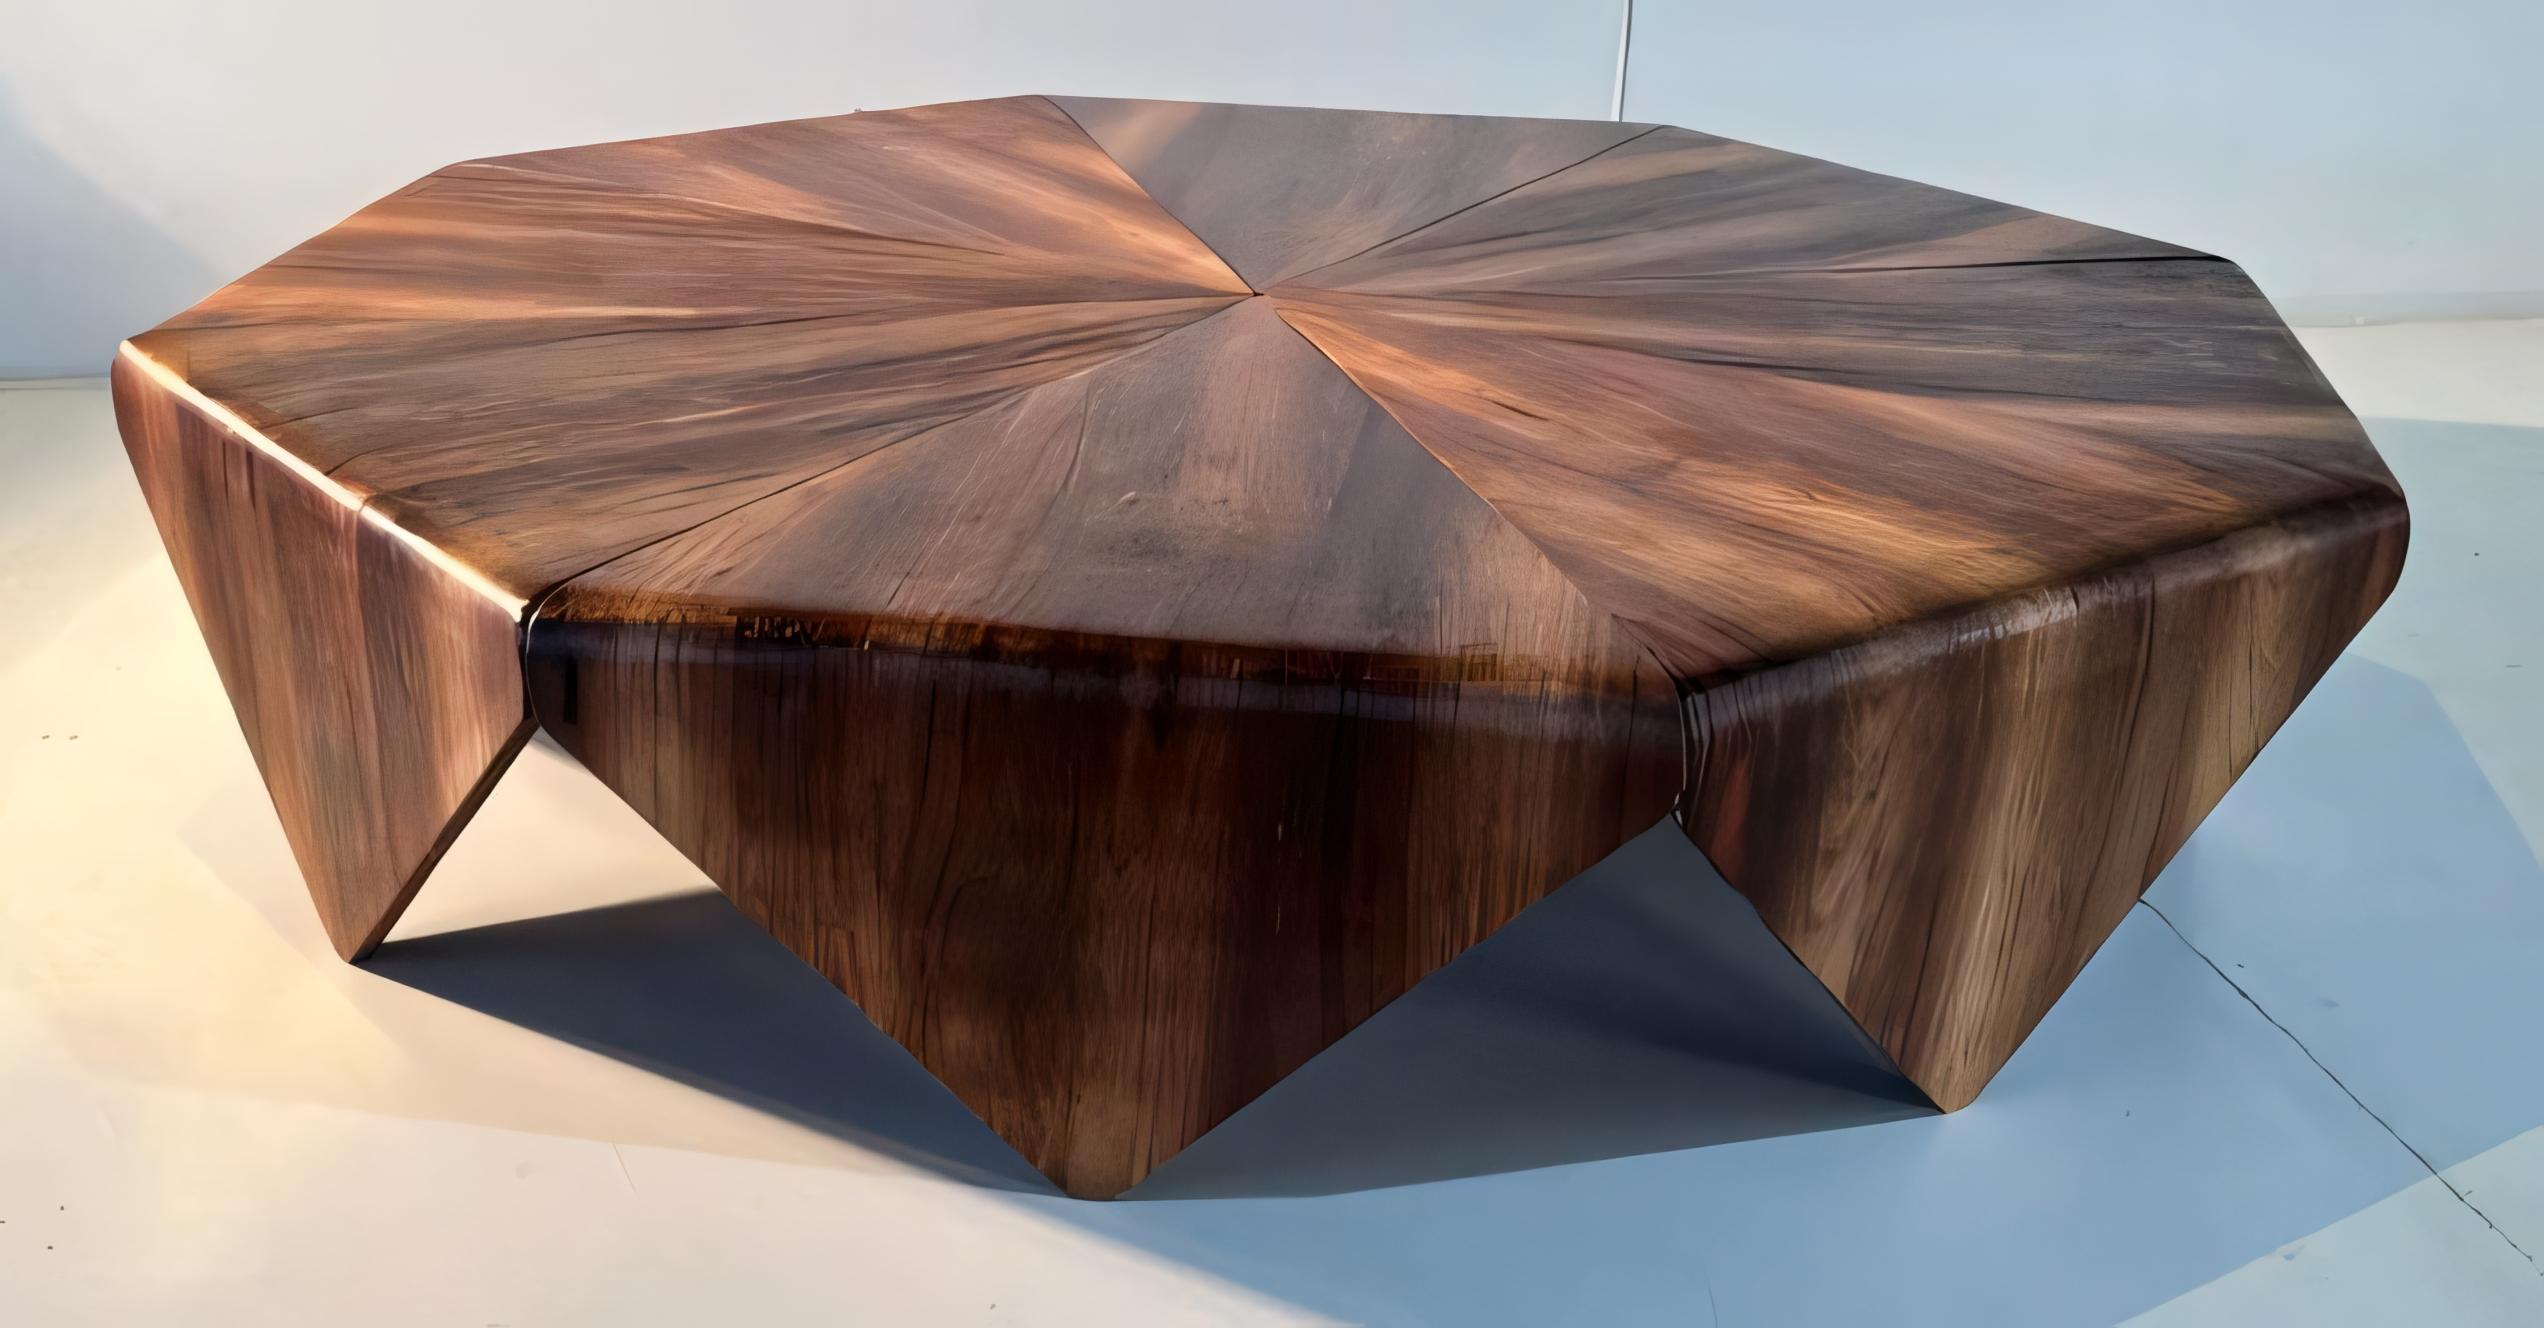 Délicate et sophistiquée, la table basse Petalas est l'une des pièces les plus célèbres de Jorge Zalszupin.
La courbure, qui défie les structures en bois, rappelle brillamment les pétales d'une fleur. La structure
de la table est constitué de  bois